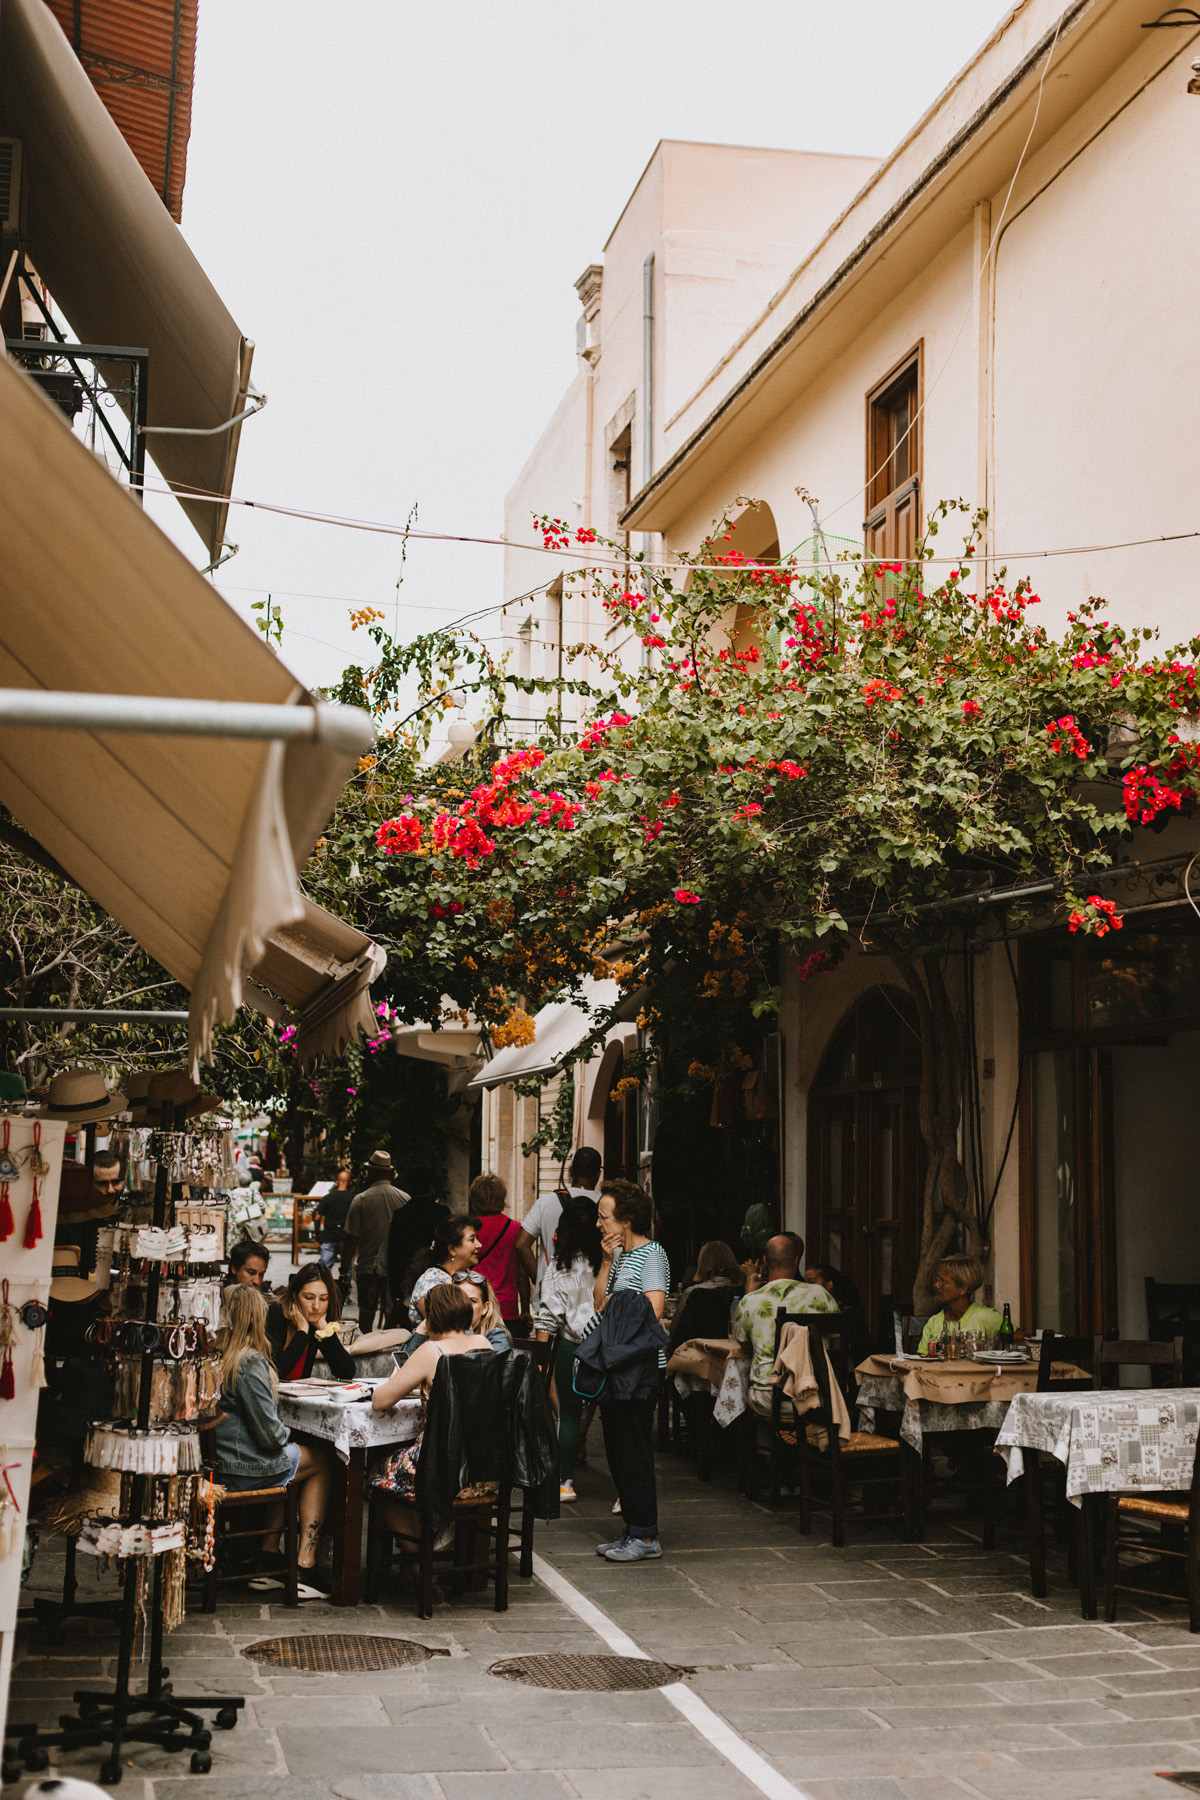 Altstadtgassen und Cafés in Rethymno auf Kreta